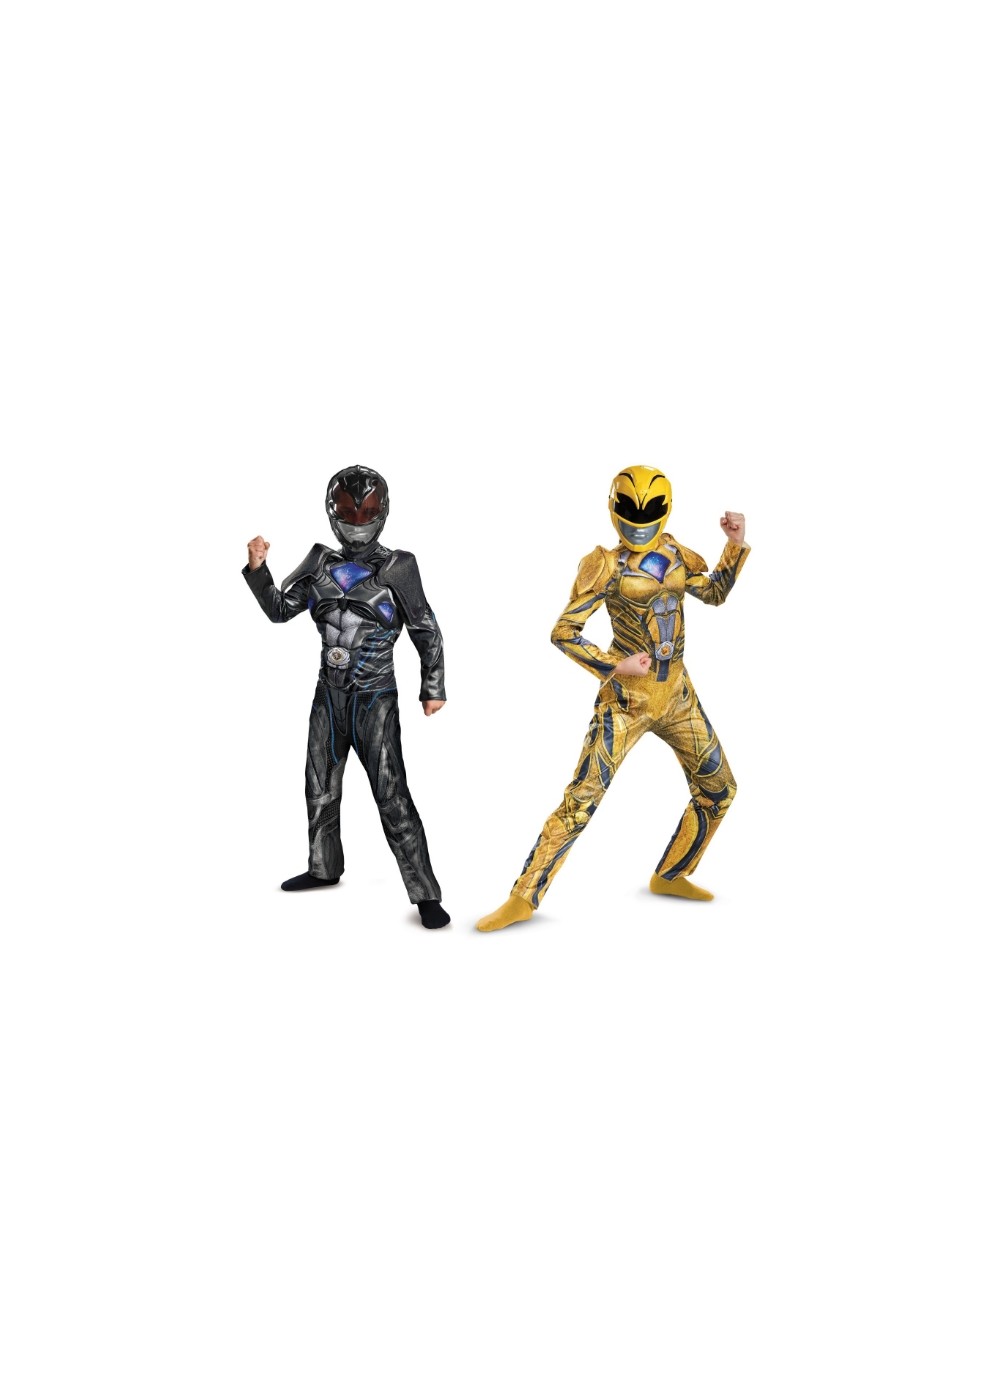 Black And Yellow Power Ranger Costume Duo